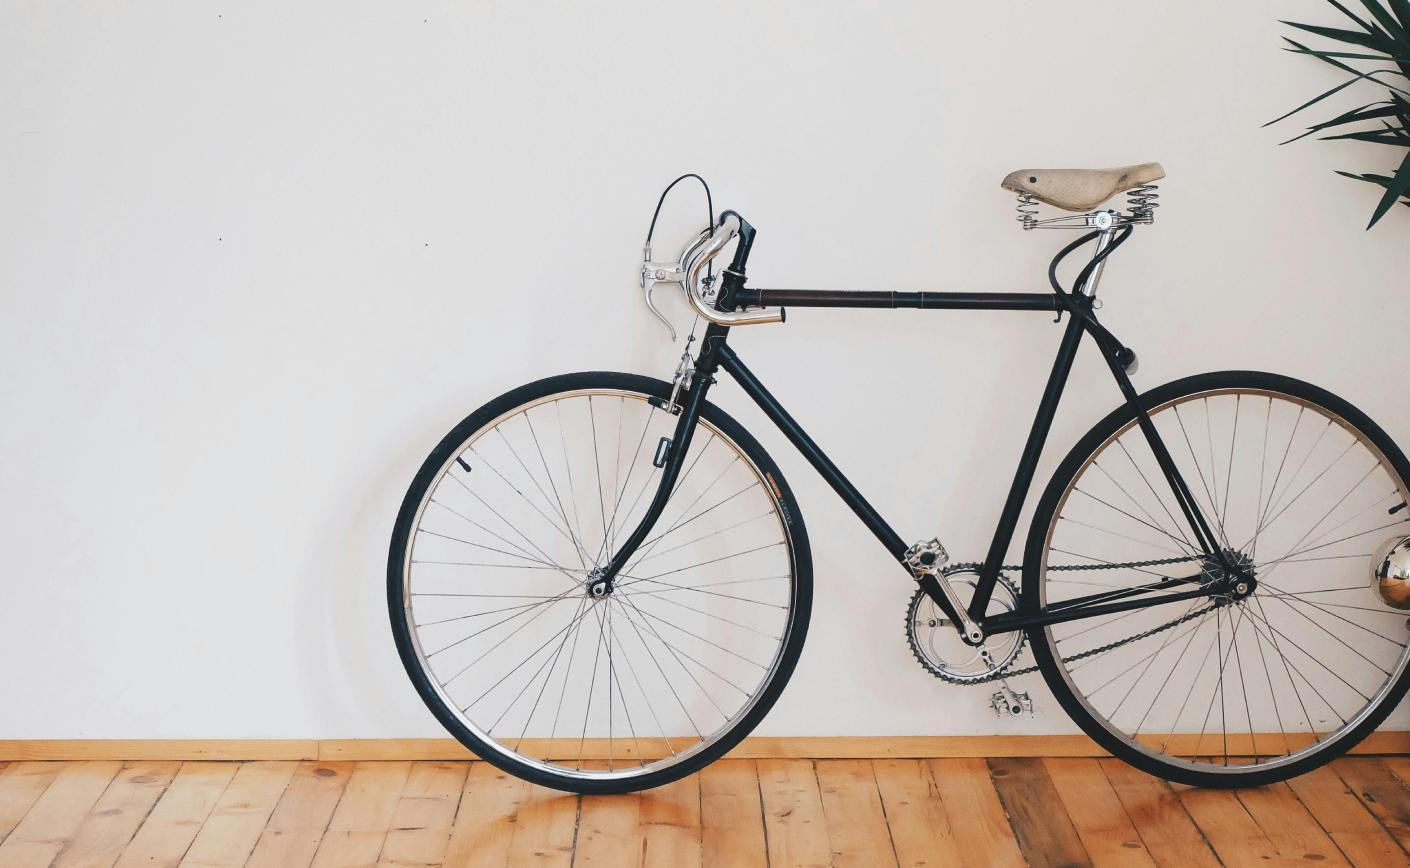 Jak przechowywać rower w mieszkaniu, piwnicy lub na balkonie? – Poradnik dla miłośników dwóch kółek.